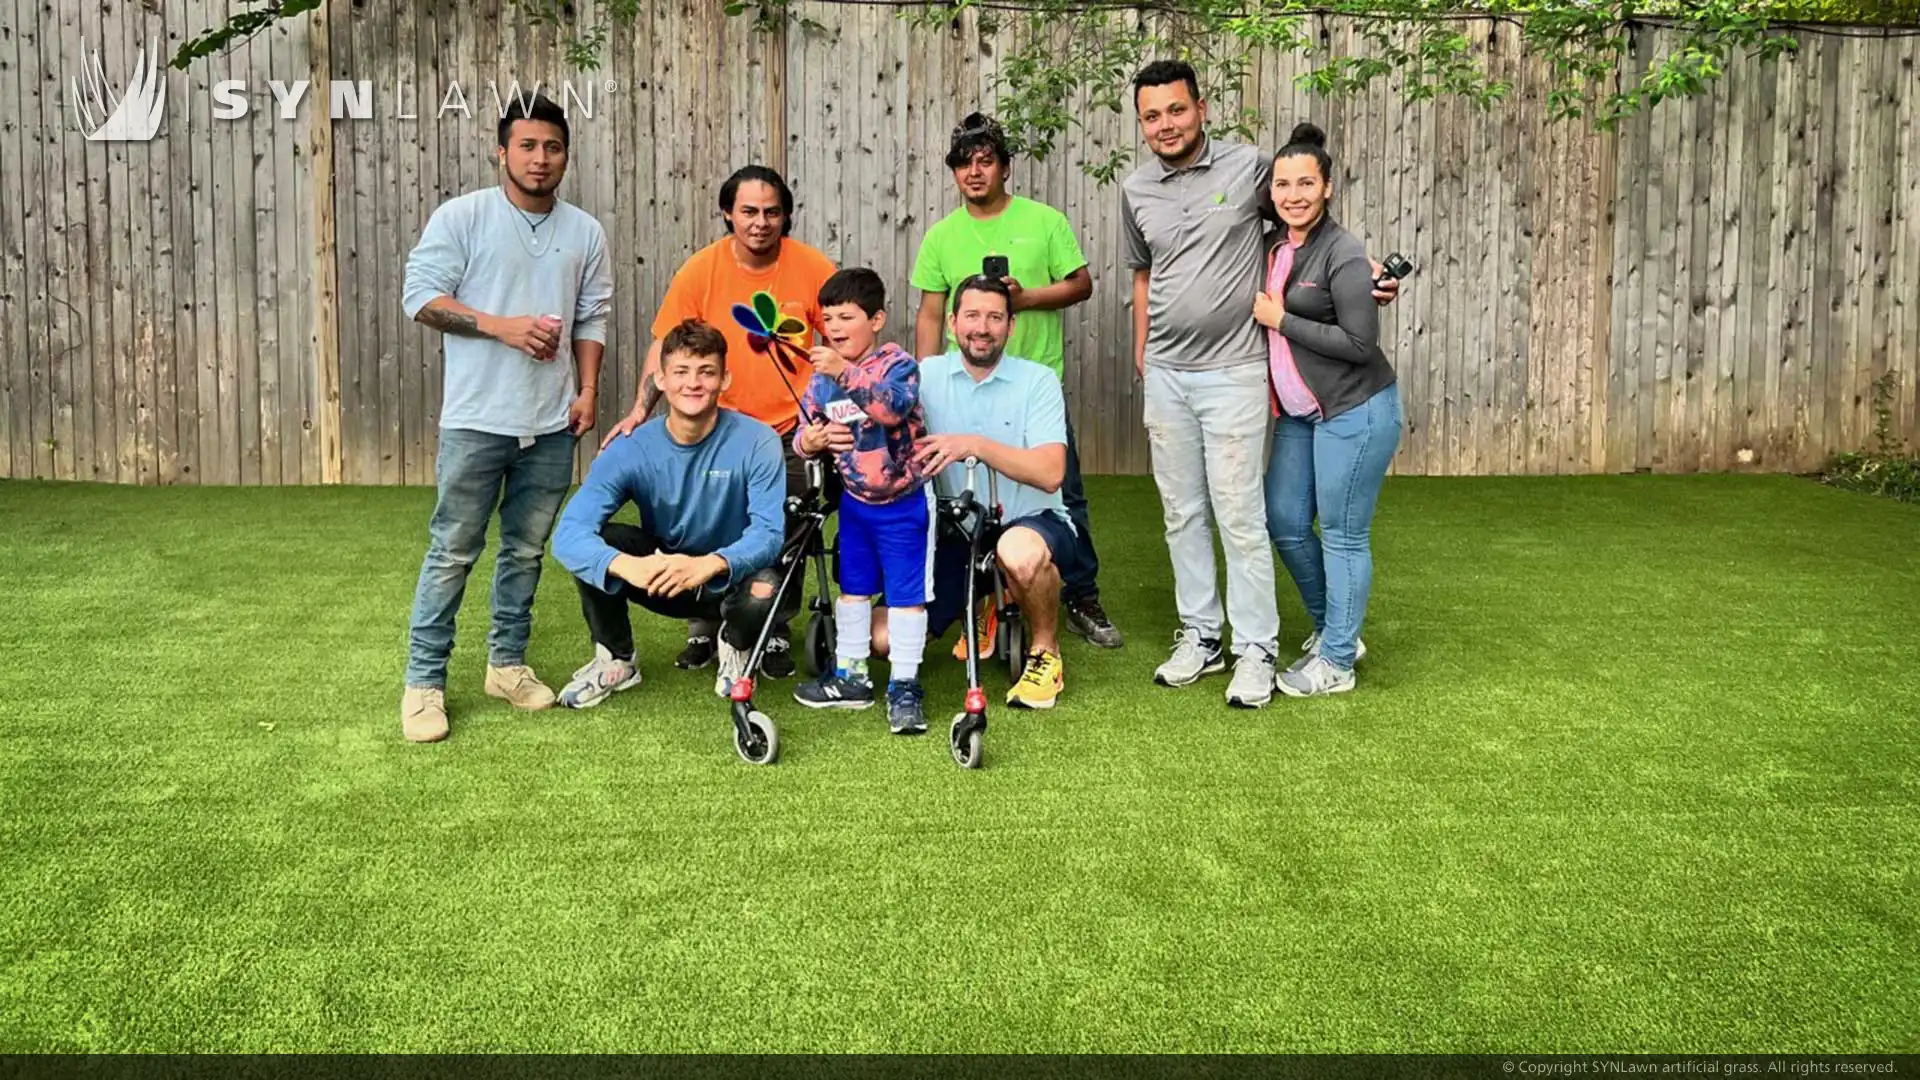 SYNLawn constrói quintal de sonho para família Make-a-Wish